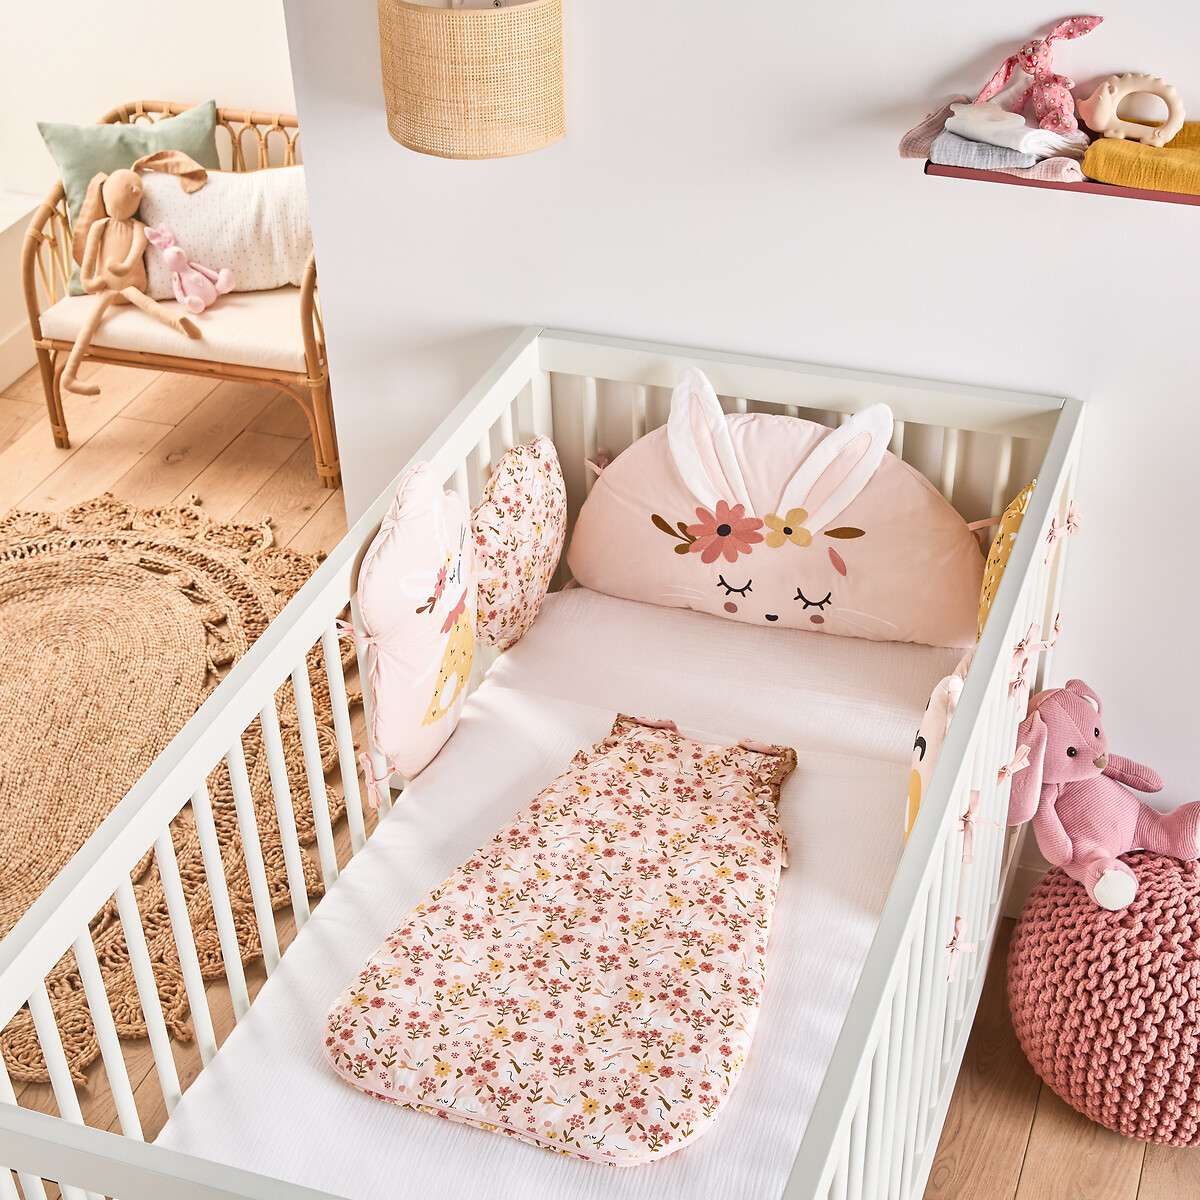 Бортик LaRedoute Модулируемый для детской кроватки из биоперкали 180 x 40 см розовый, размер 180 x 40 см - фото 2